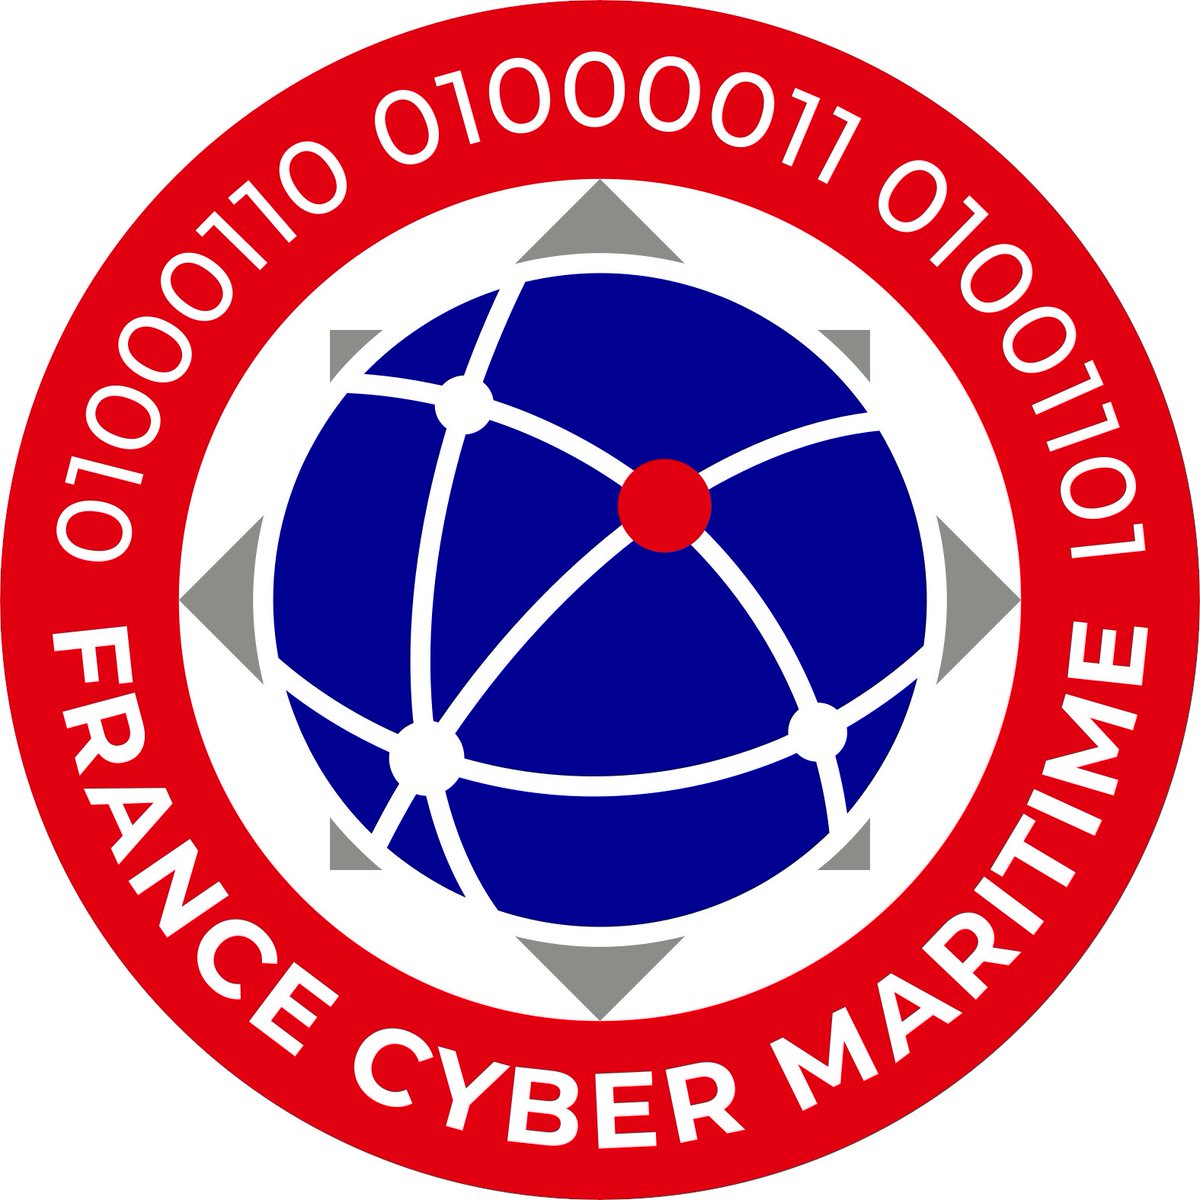 Montée en puissance de l’action de France Cyber Maritime avec le soutien de l’État